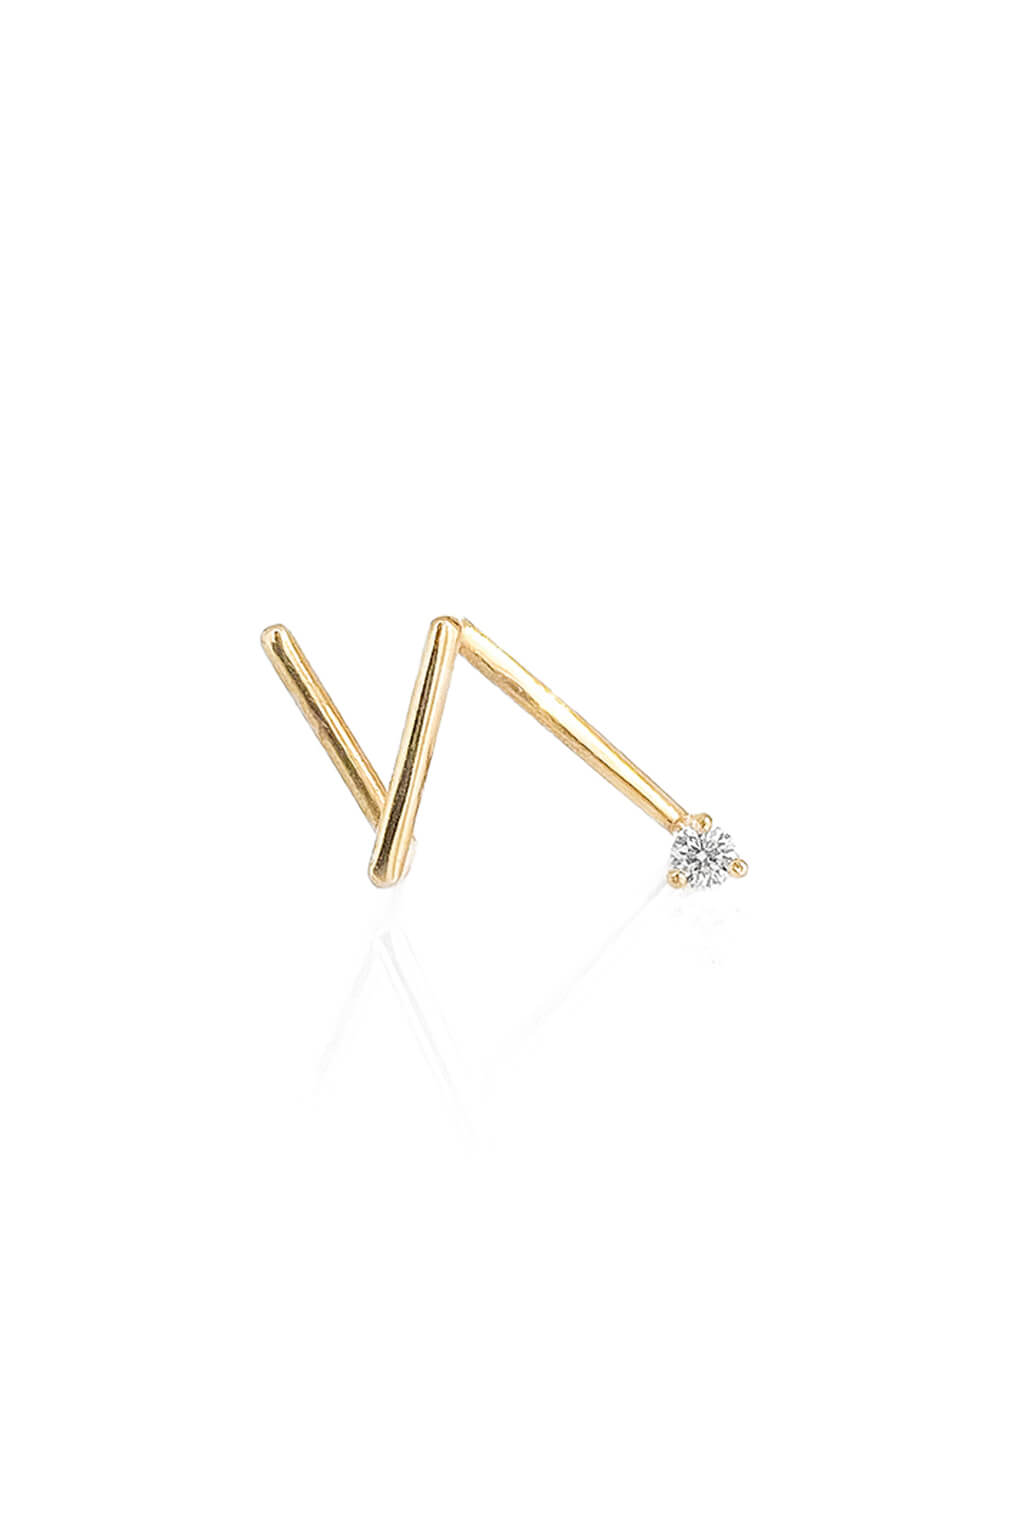 1'7 mm diamond Z gold earring